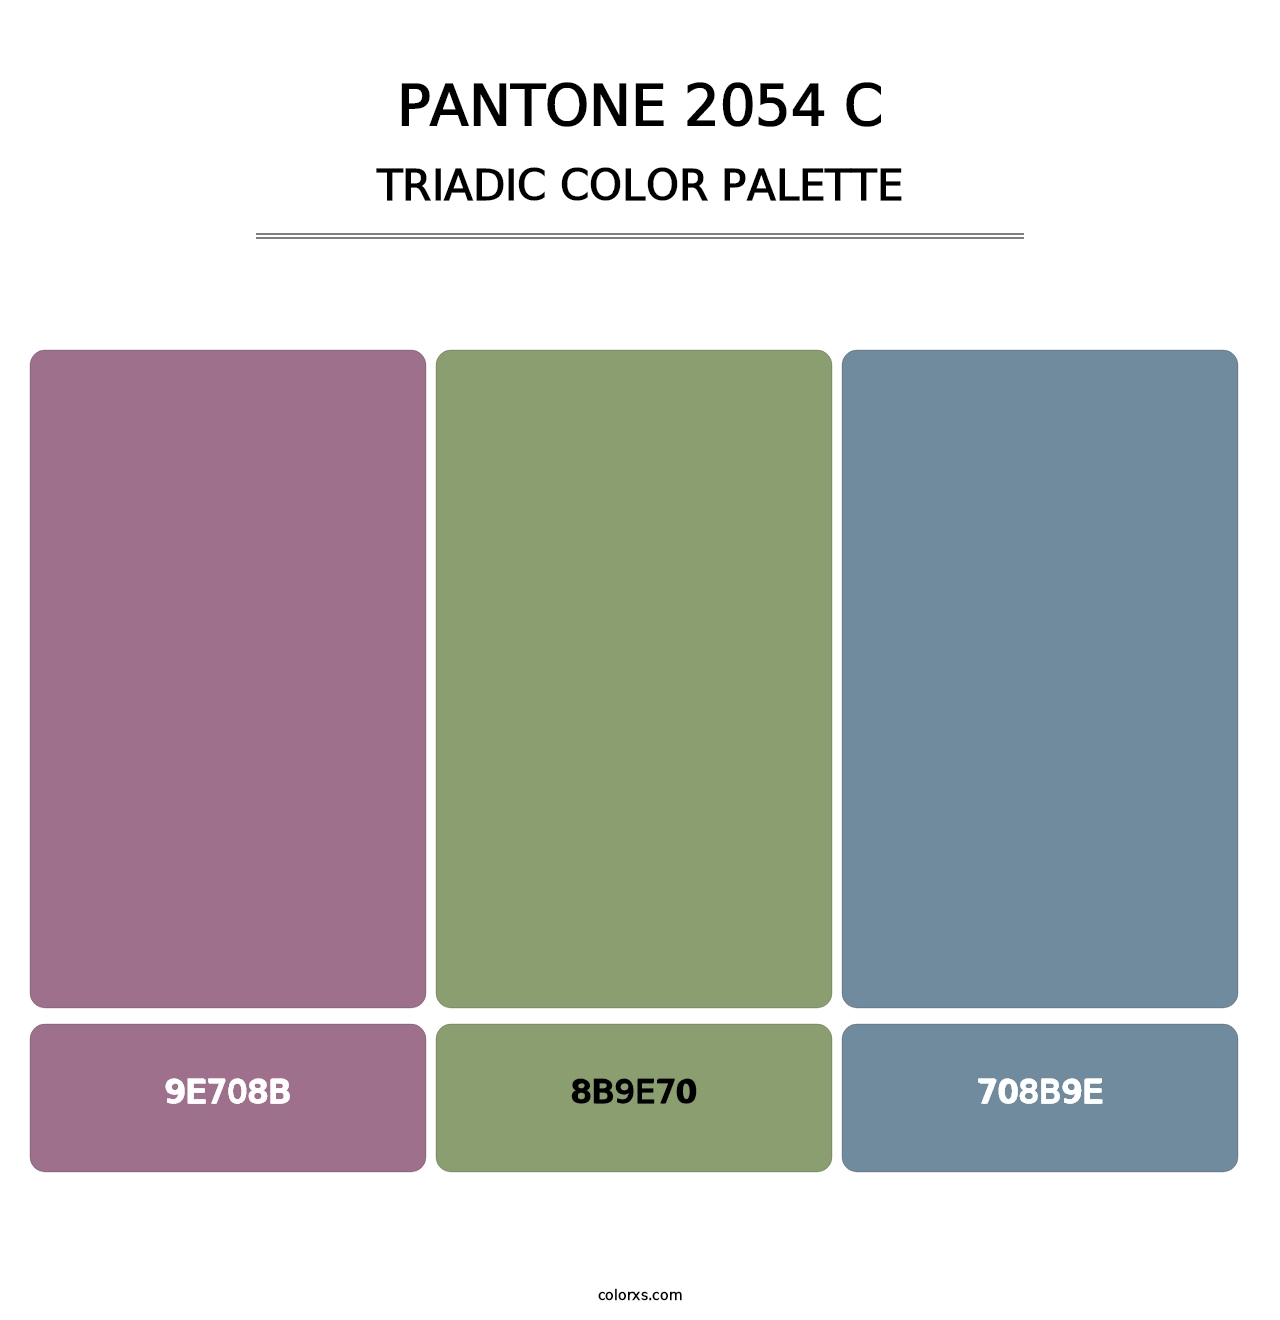 PANTONE 2054 C - Triadic Color Palette